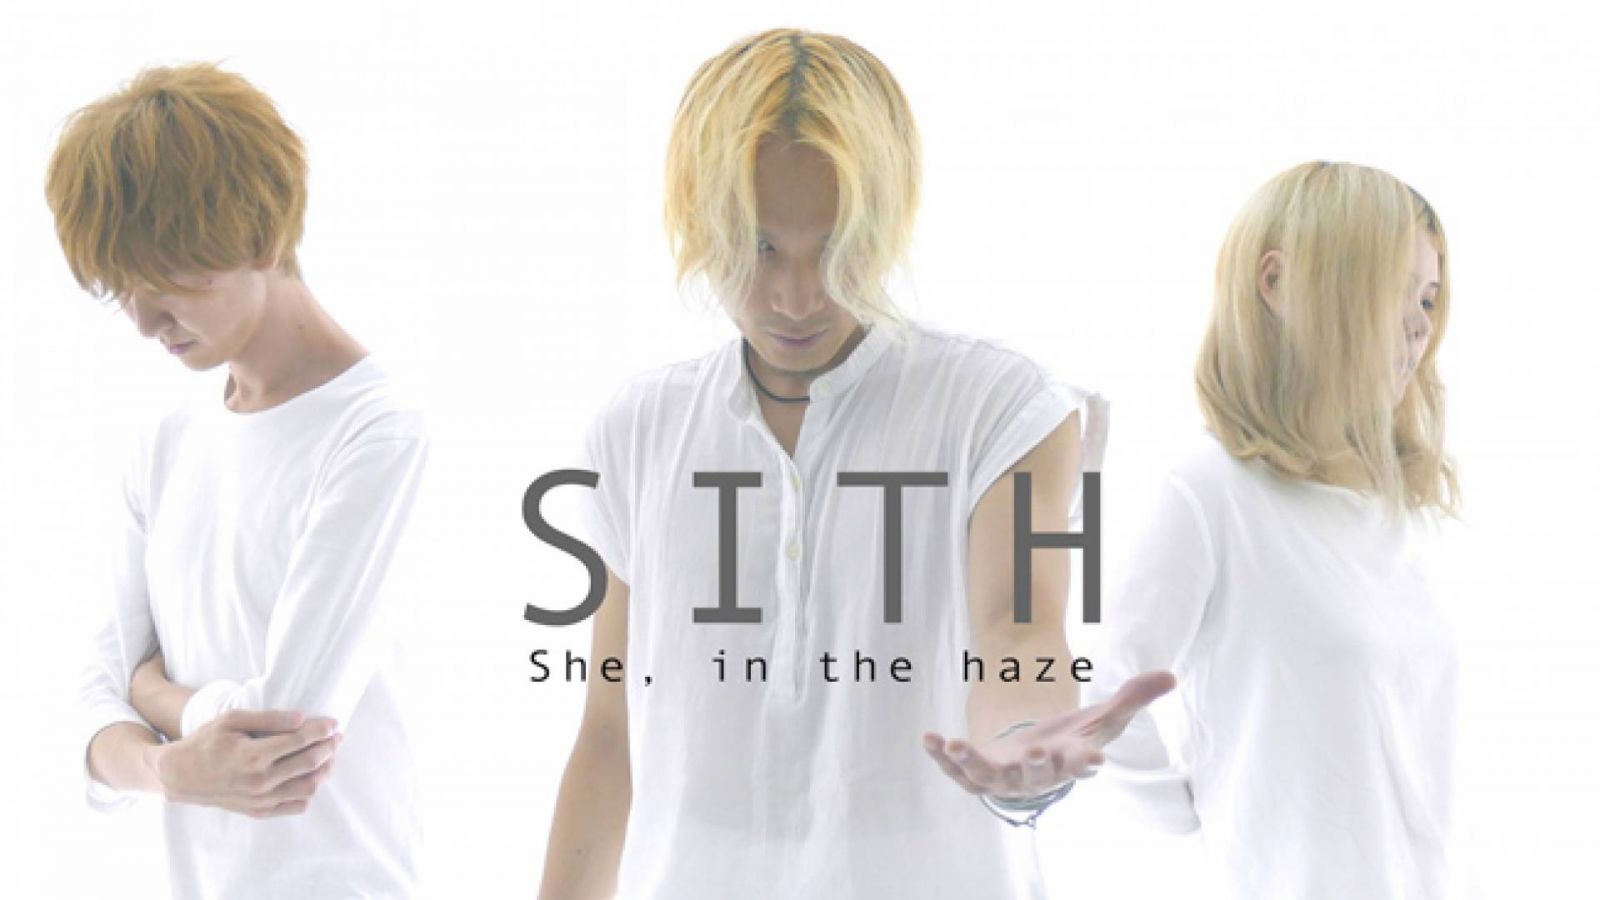 She, in the haze © She, in the haze - Yamaha Music